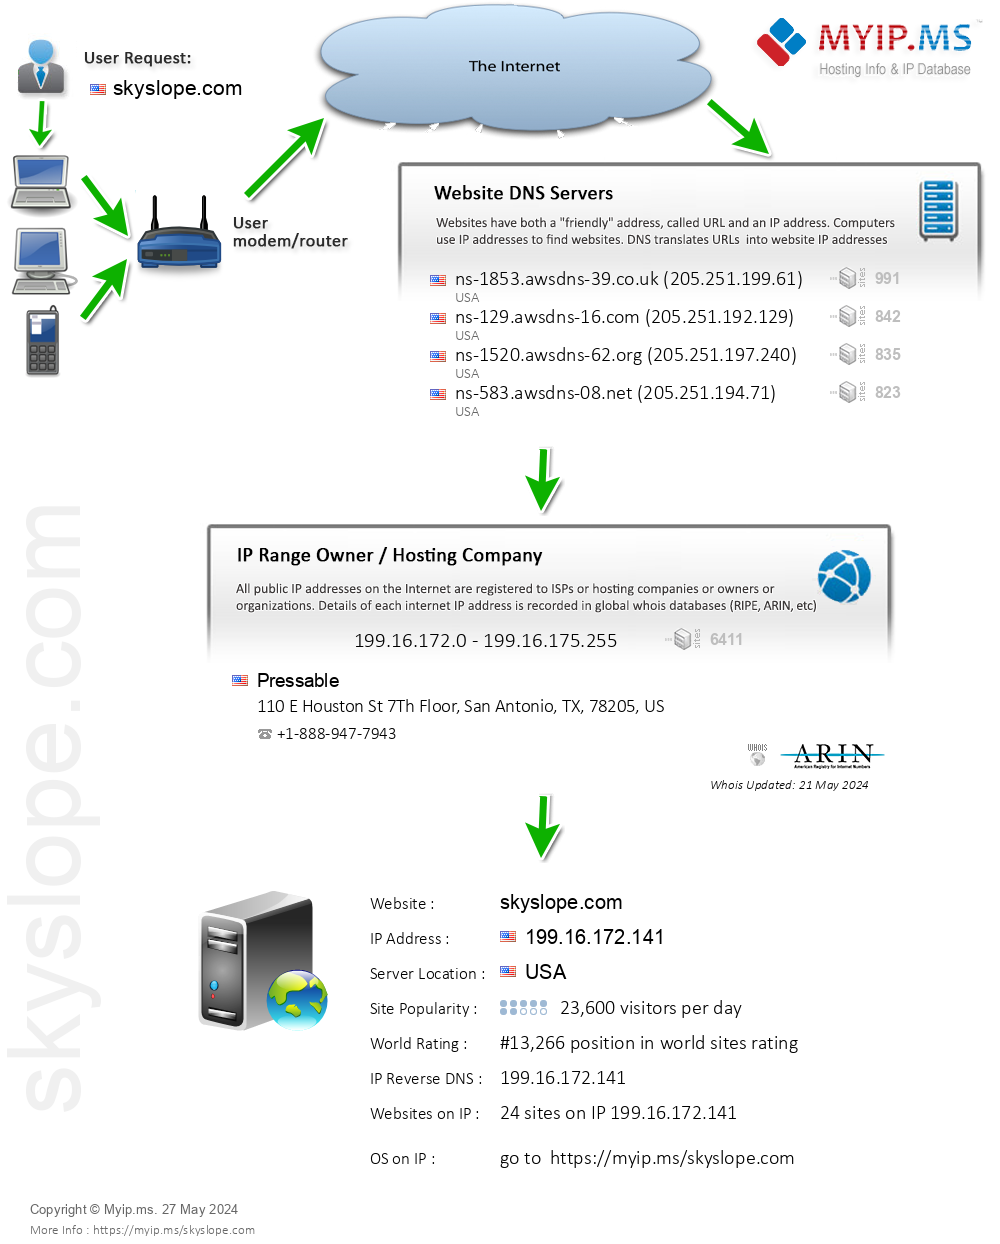 Skyslope.com - Website Hosting Visual IP Diagram